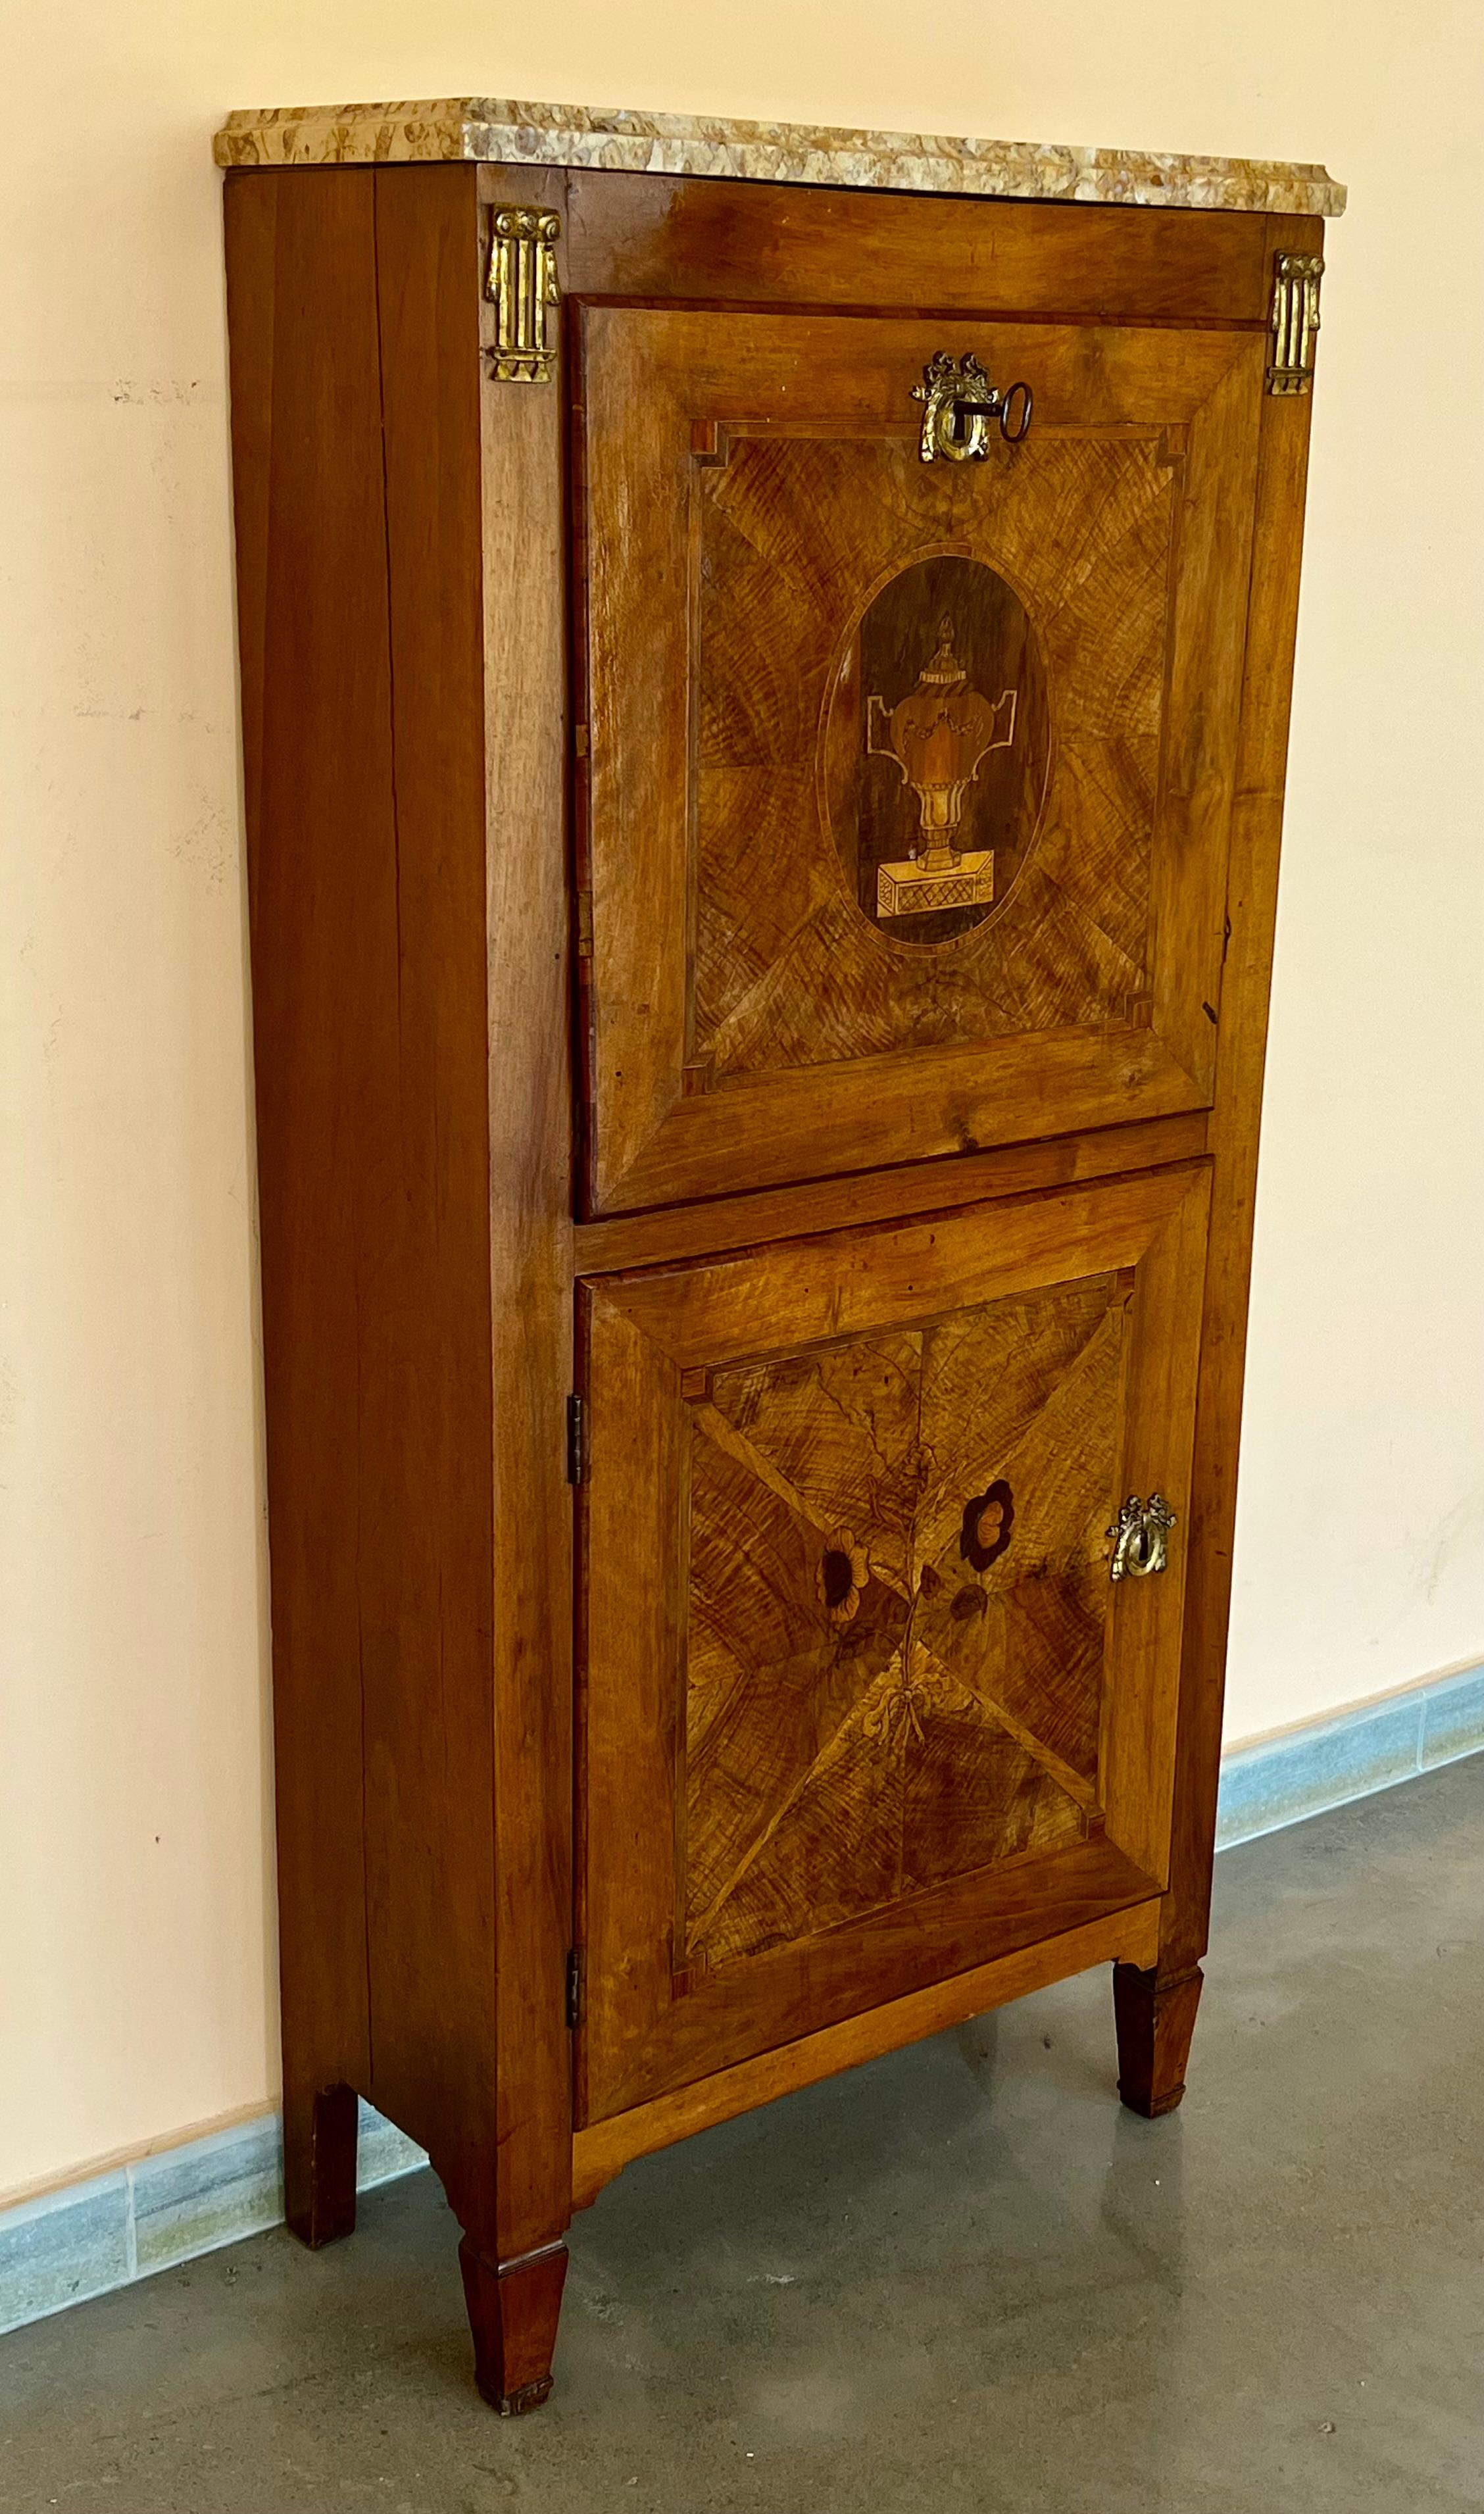 Secretaire a abattant, Spanien um 1900. Die Außenseite mit Sturzfront und eine niedrige Tür mit Fach, schöne Intarsien Eichenholz. Das Holz im Inneren öffnet sich zu einem zentralen Fach, das von zwei Schubladen und einem Regal für zwei Fächer